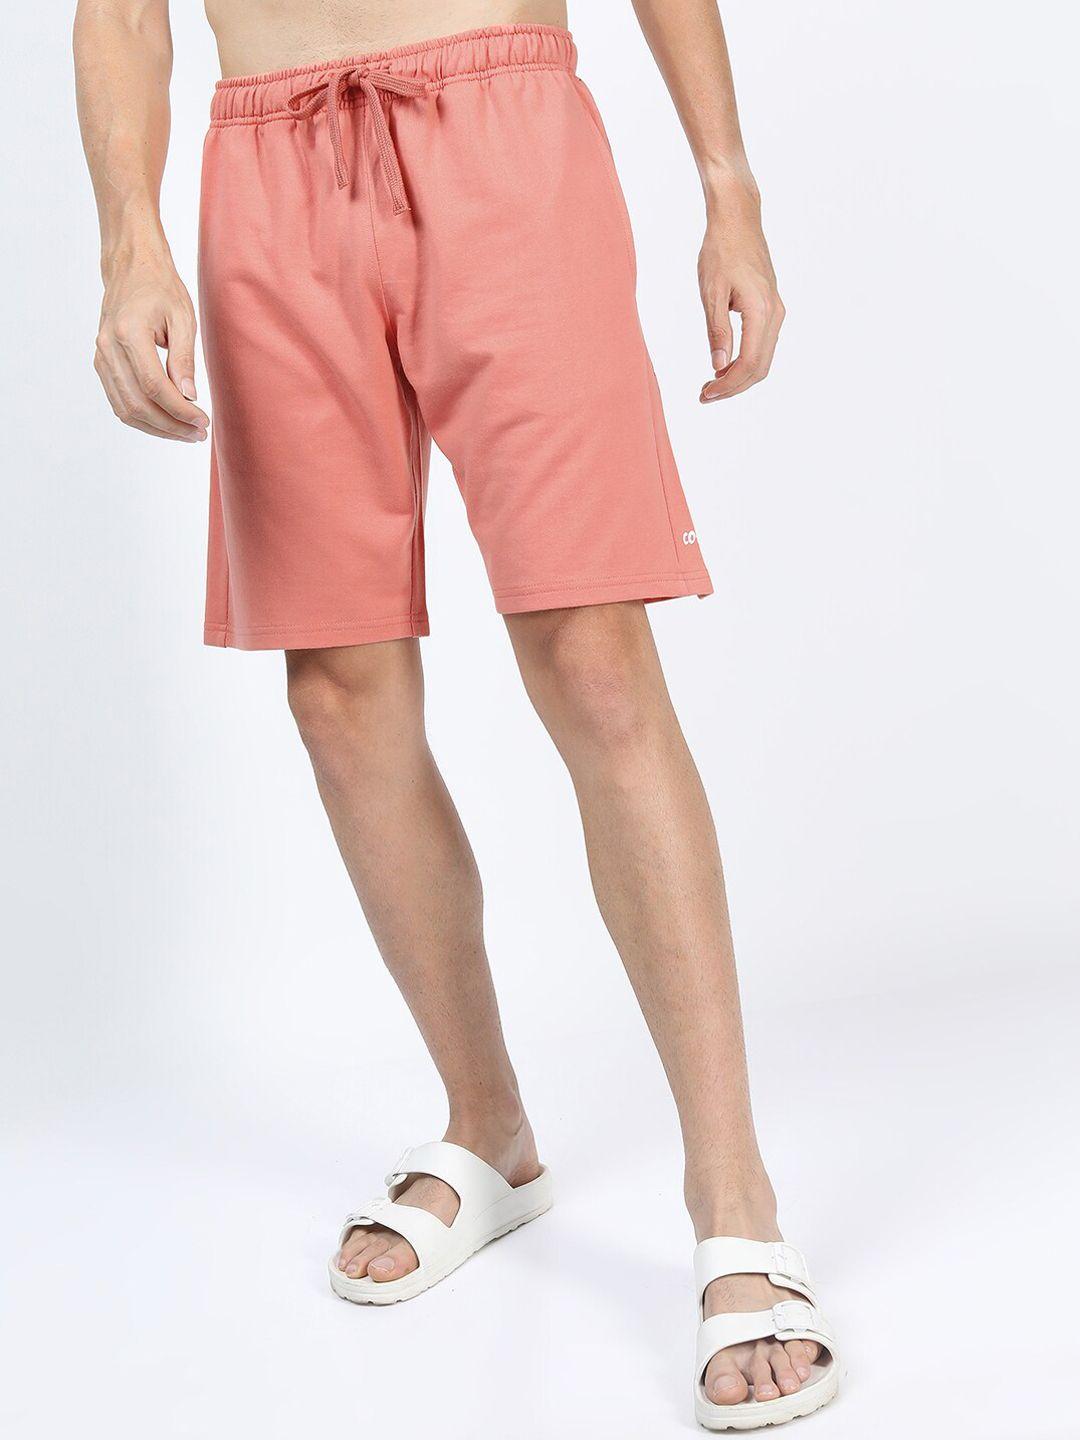 ketch-men-peach-coloured-shorts